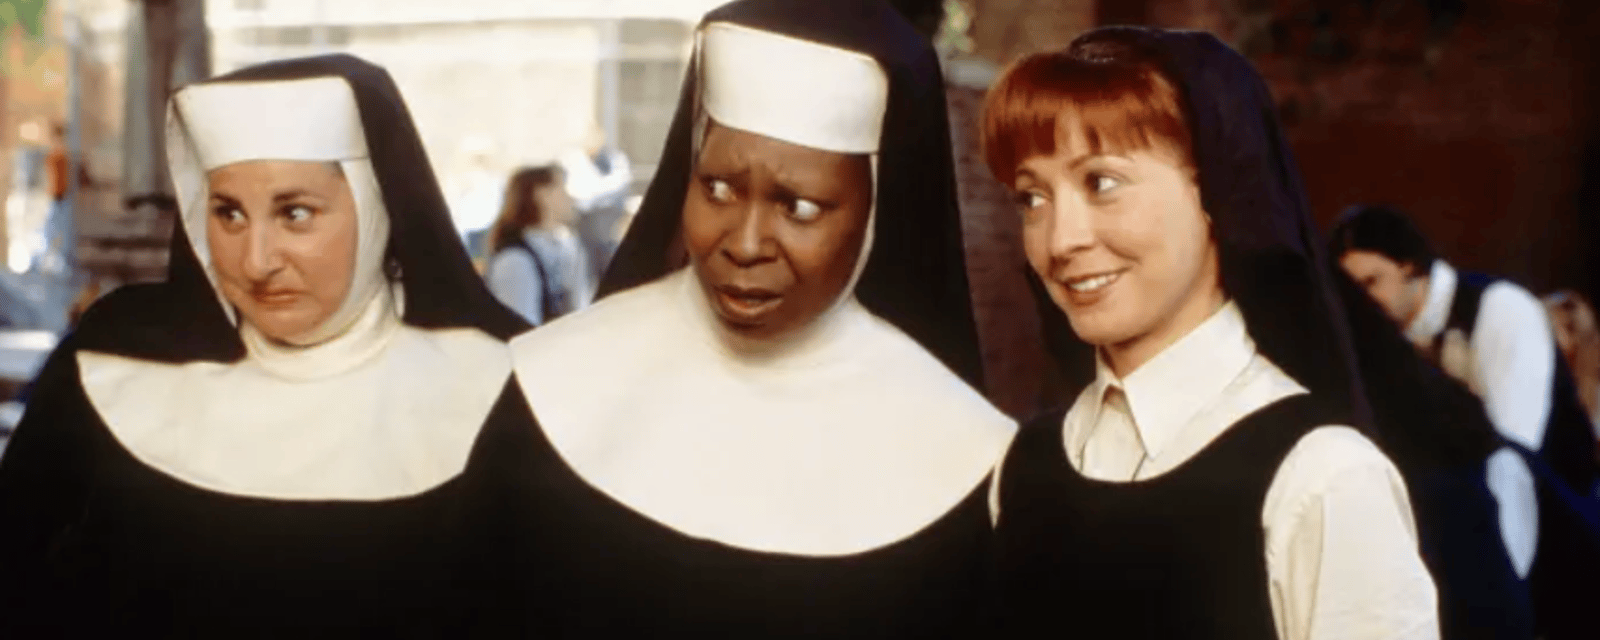 Le 3e film de Sister Act a été officiellement confirmé par l'actrice Whoopi Goldberg